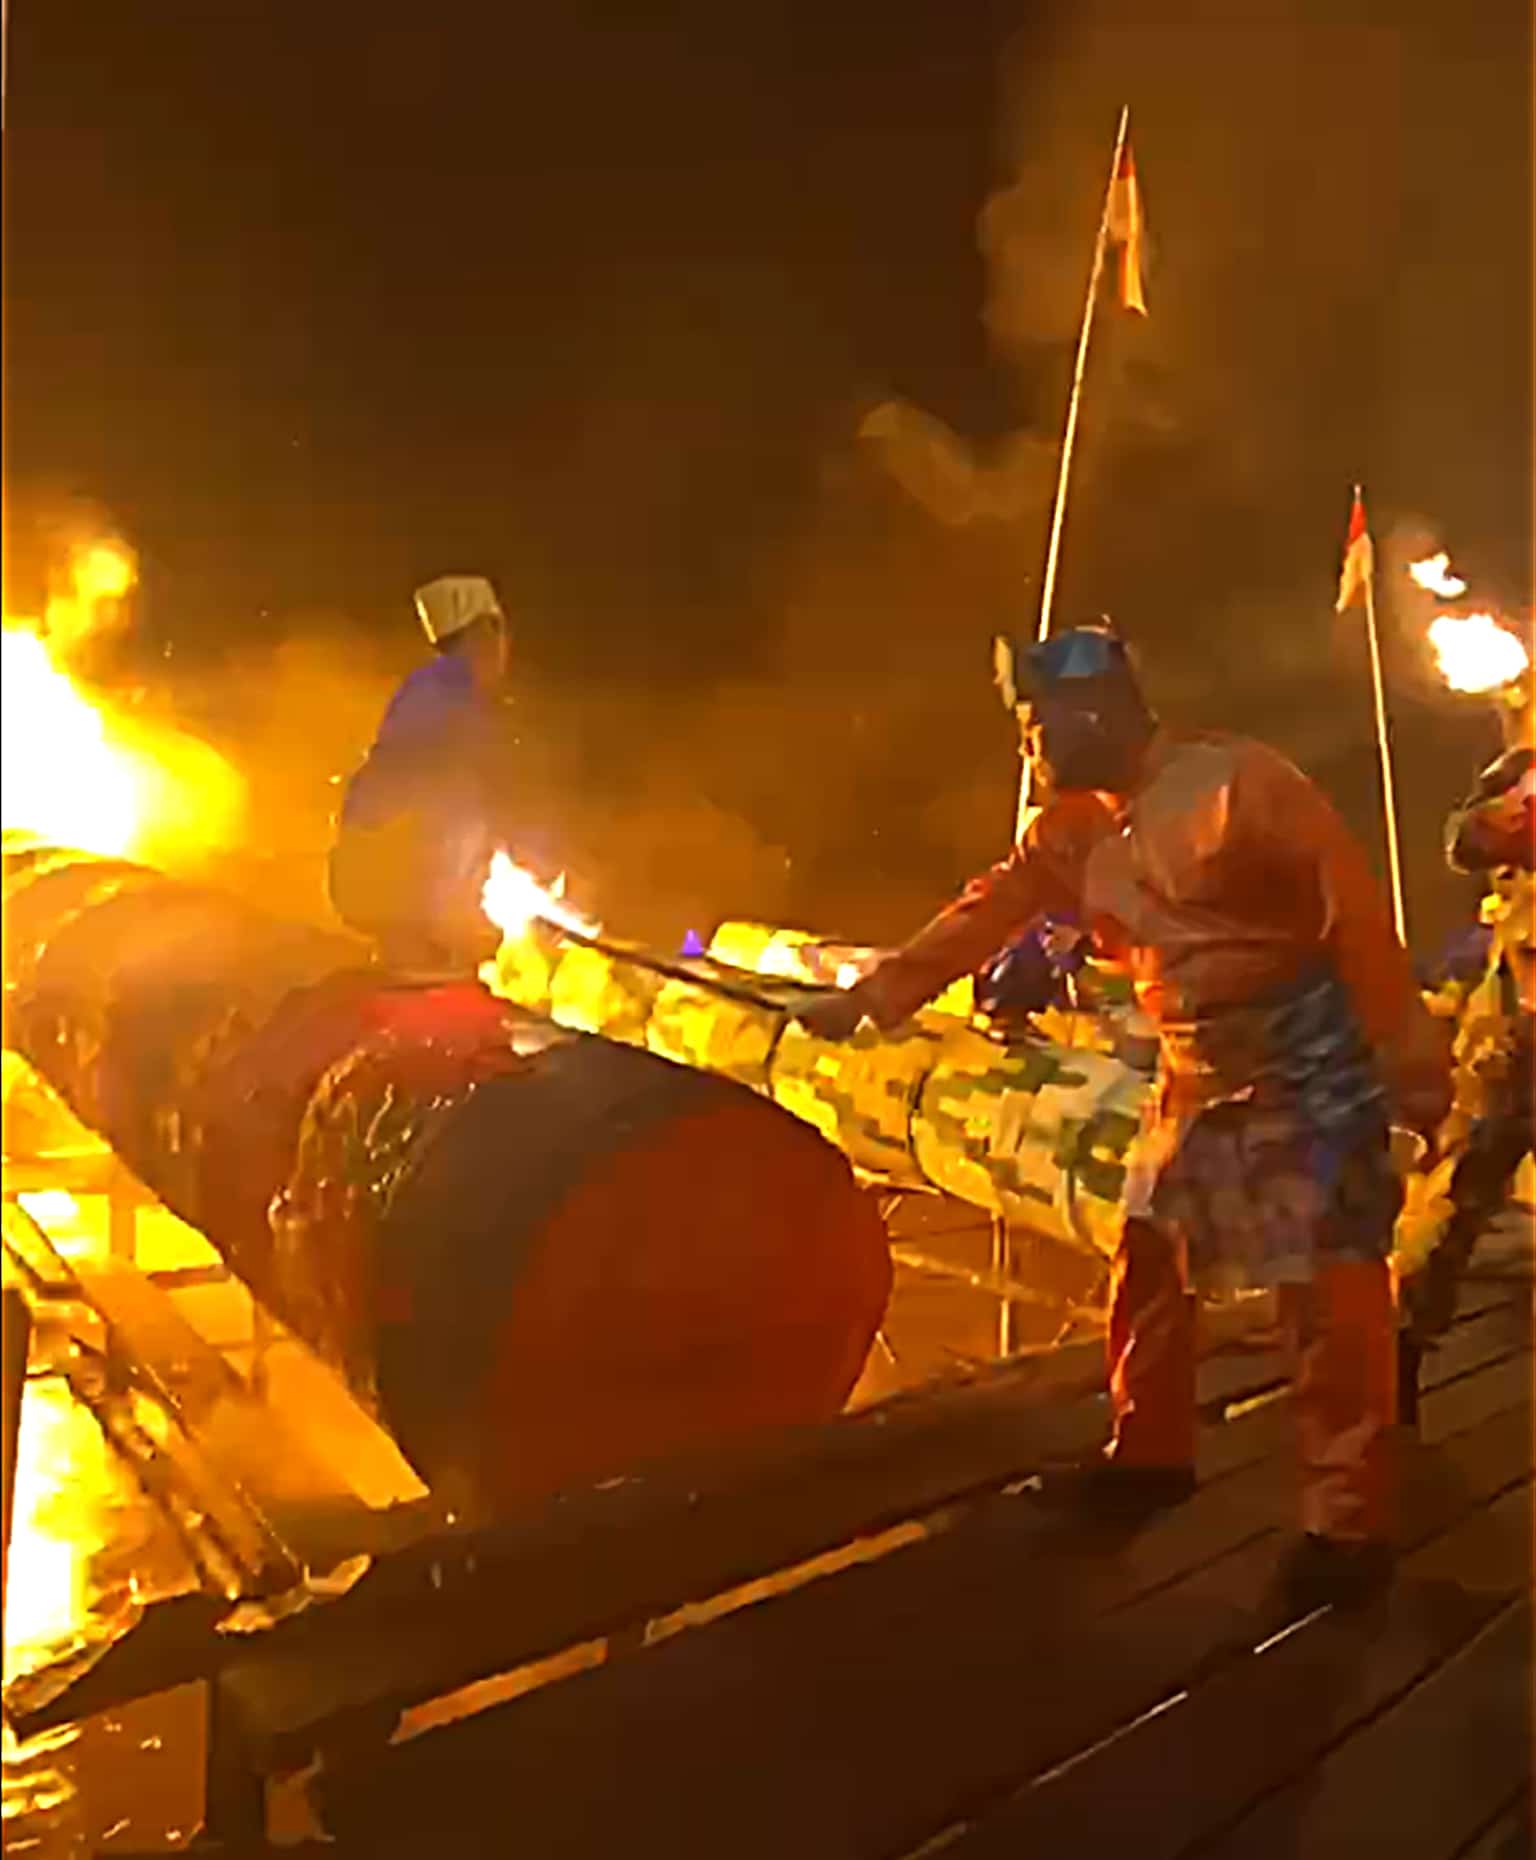 Sekda Kalbar Harisson saat menyulut meriam karbit pada acara pembukaan Festival Meriam Karbit 2023